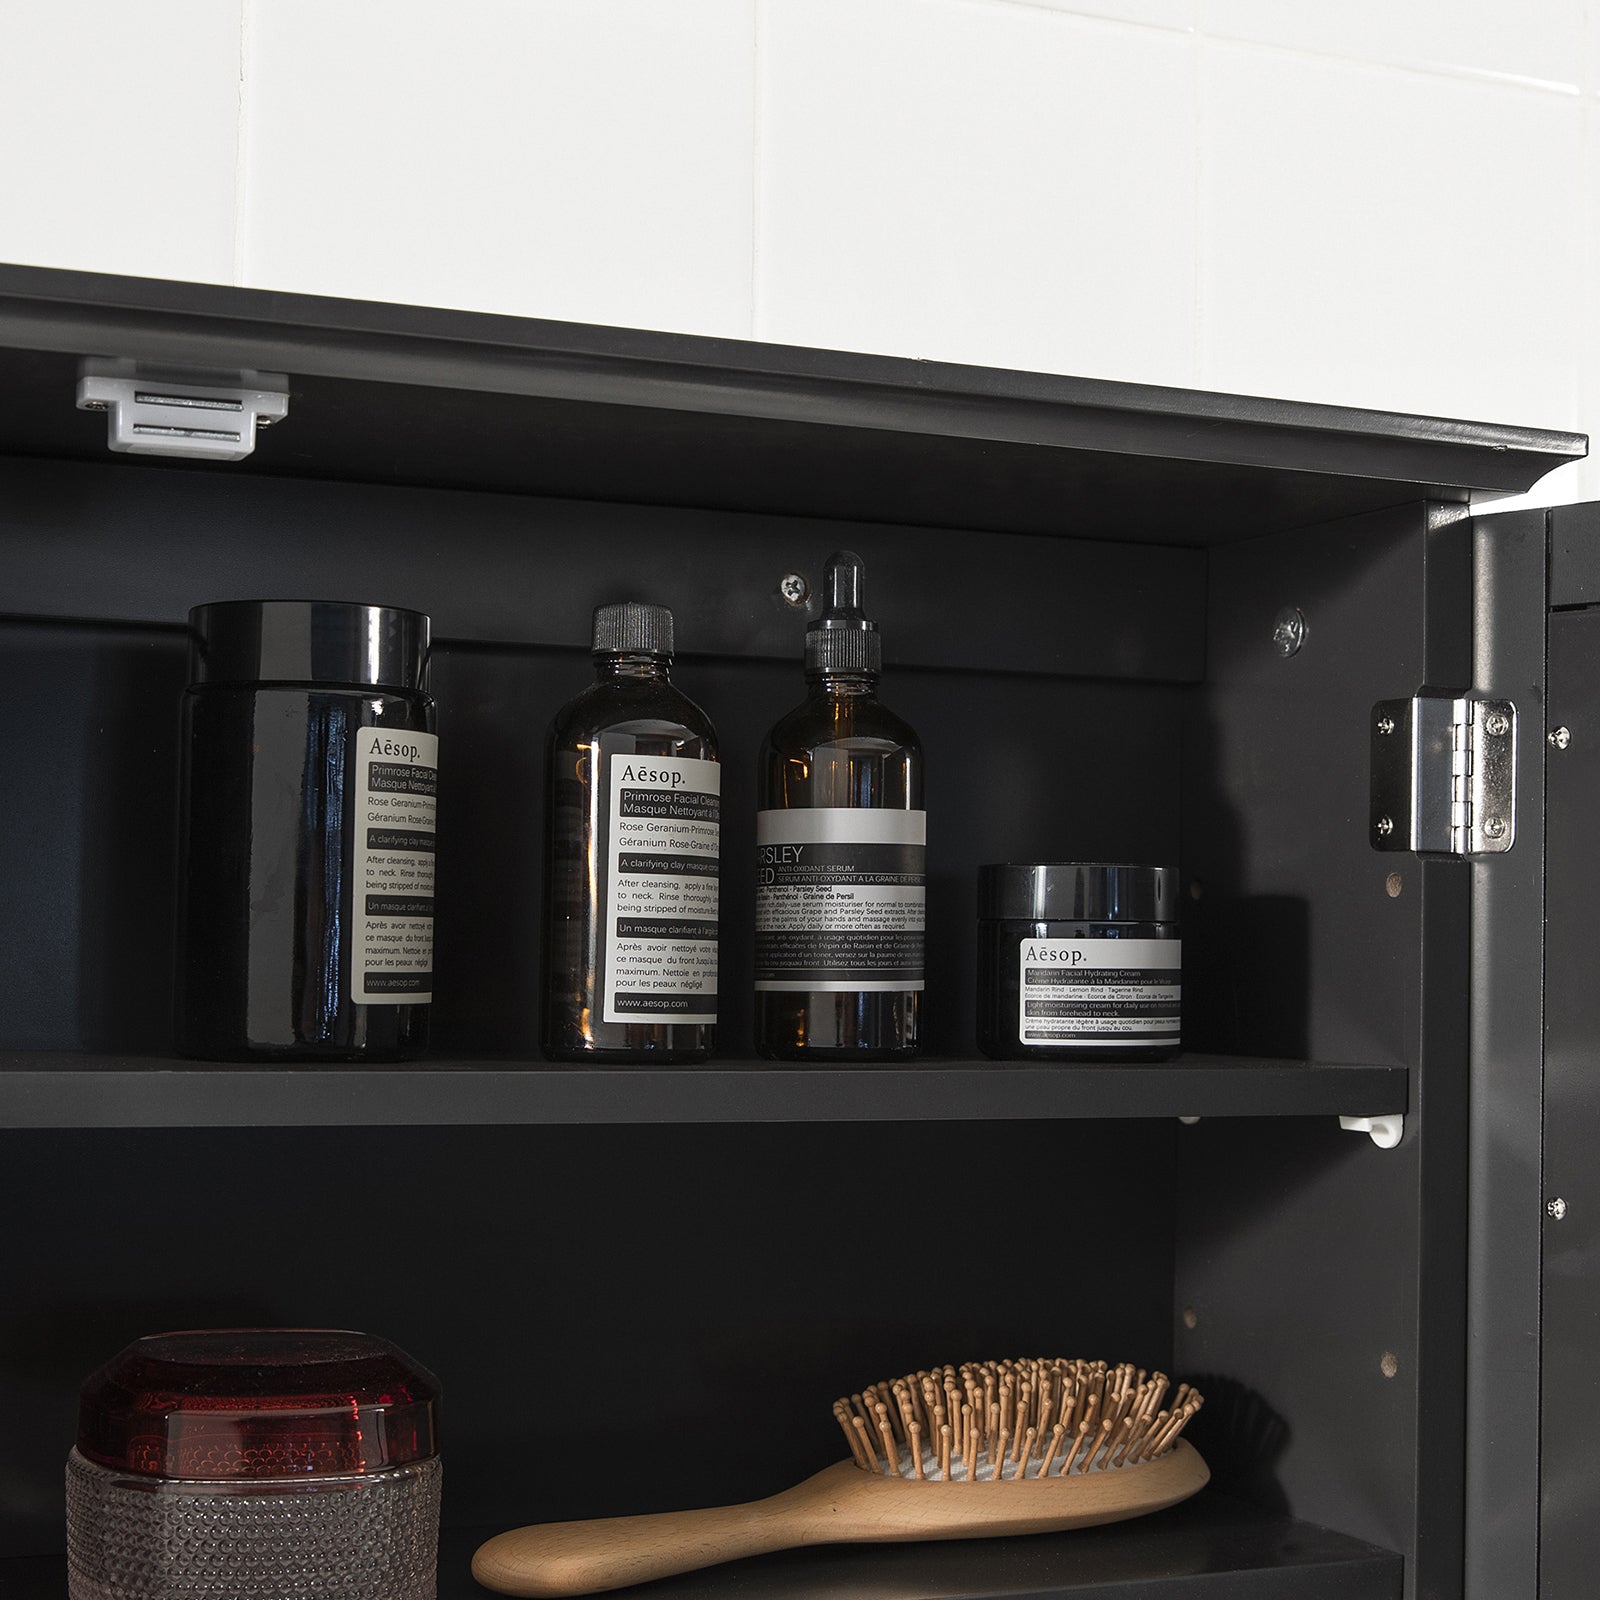 SoBuy BZR55-DG, Bathroom Wall Mirror Cabinet, Wall Mounted Bathroom Cabinet, Mirrored Storage Cabinet Unit, Grey